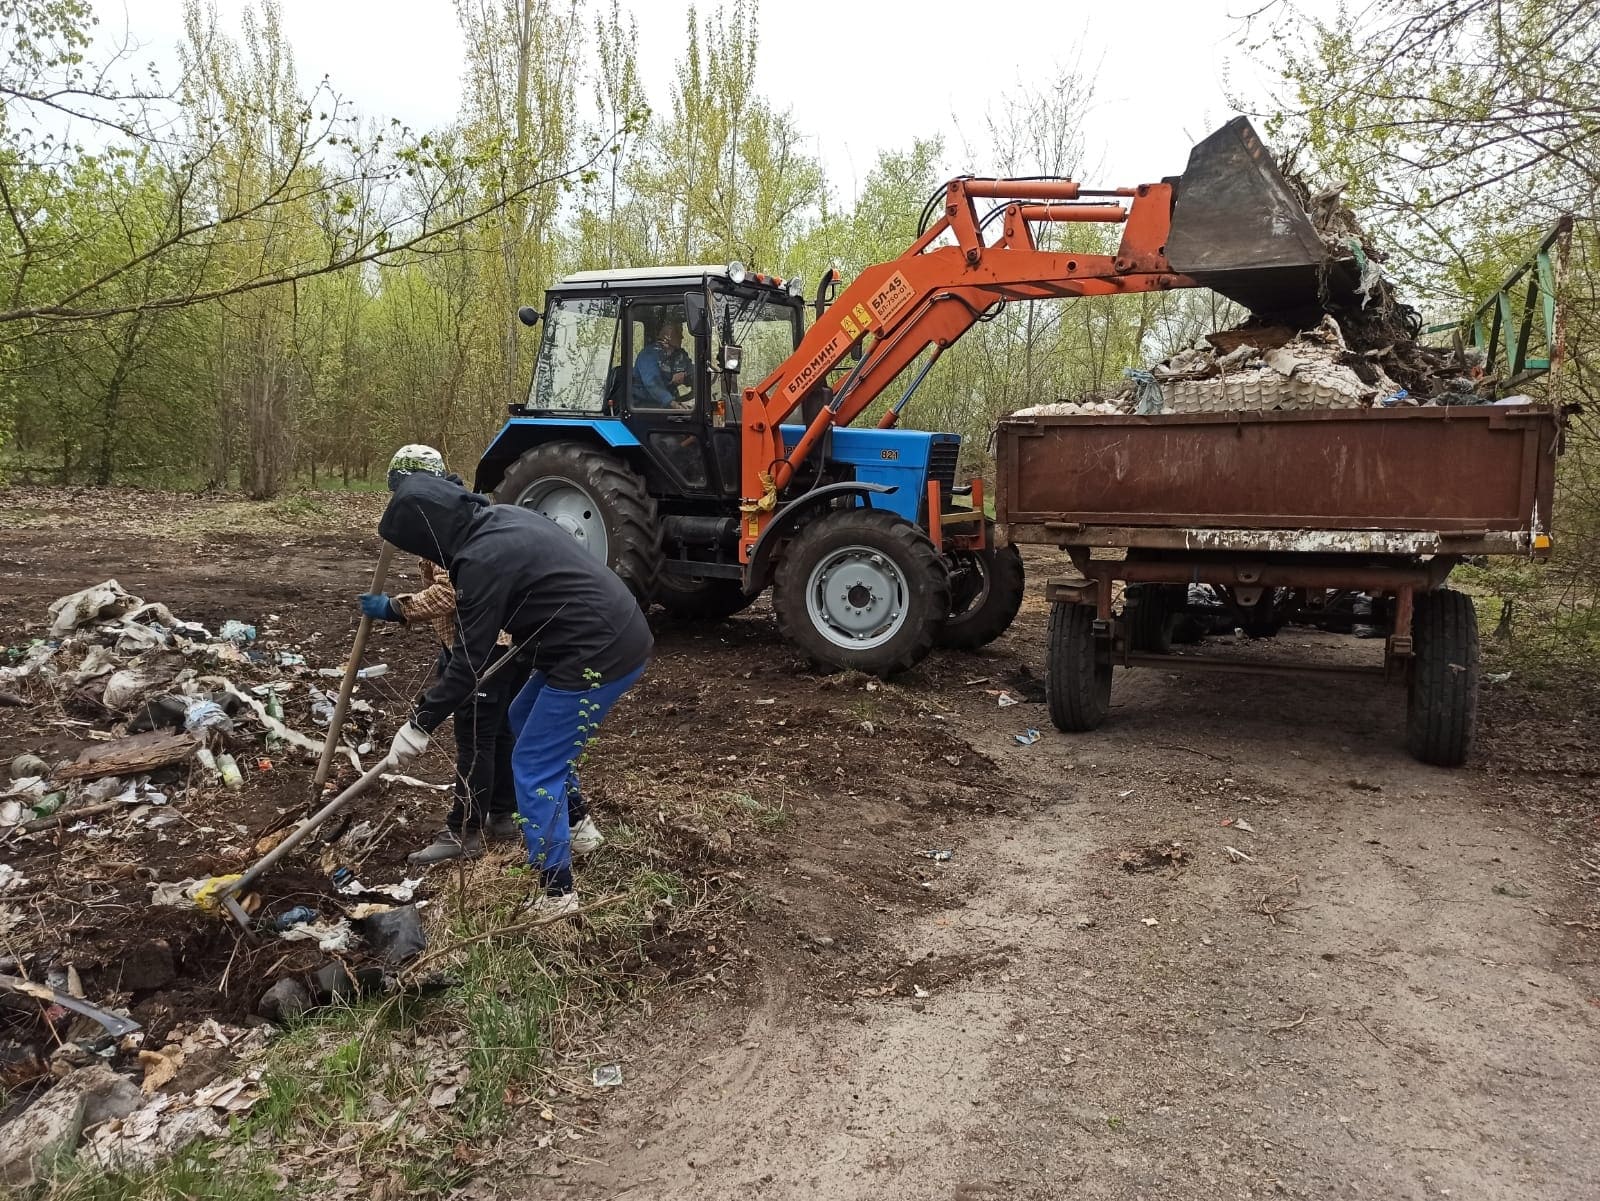 16 апреля силами работников дома культуры, администрации была ликвидирована стихийная свалка мусора в селе Дракино..